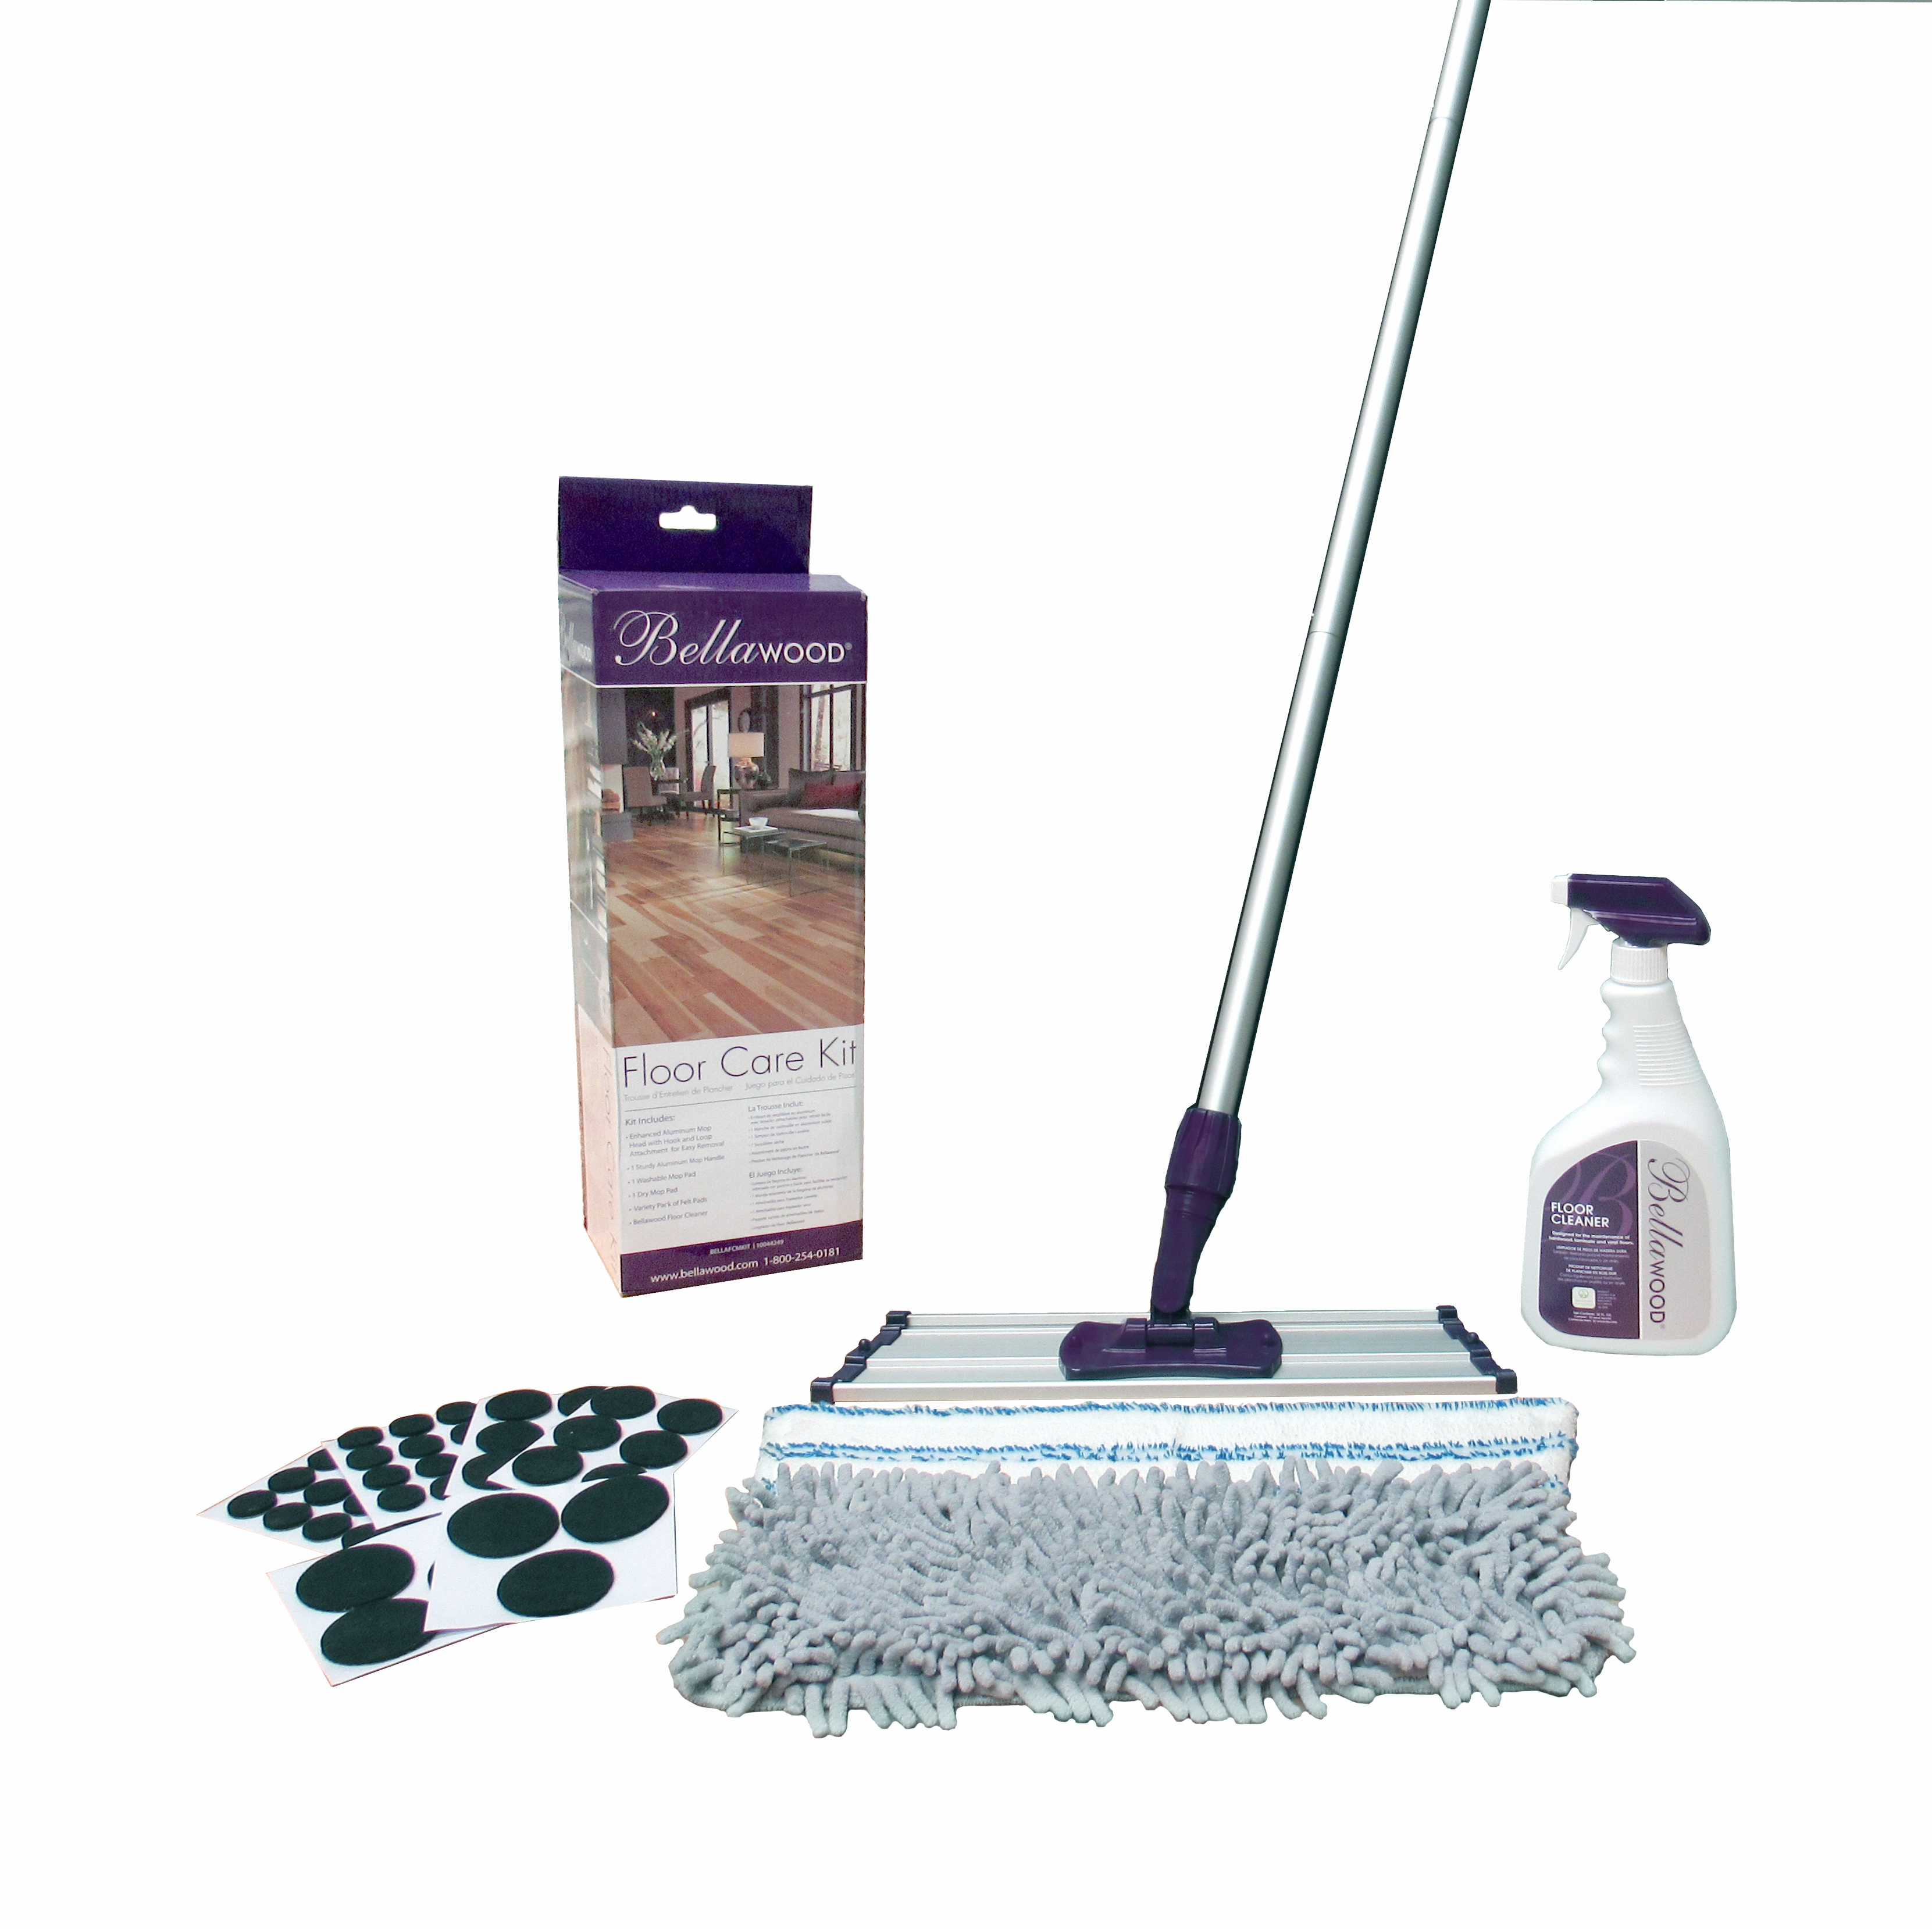 Bellawood Floor Care Maintenance Kit, Bellawood Hardwood Floor Cleaner Reviews